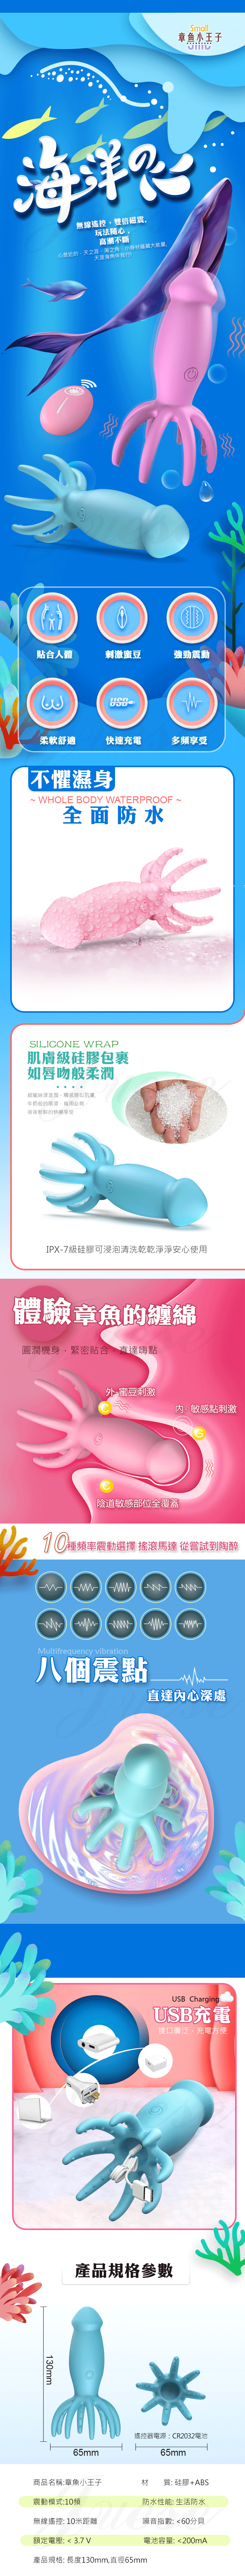 章魚王子 10段變頻八爪震點刺激蜜豆遙控USB充電按摩棒-櫻花粉